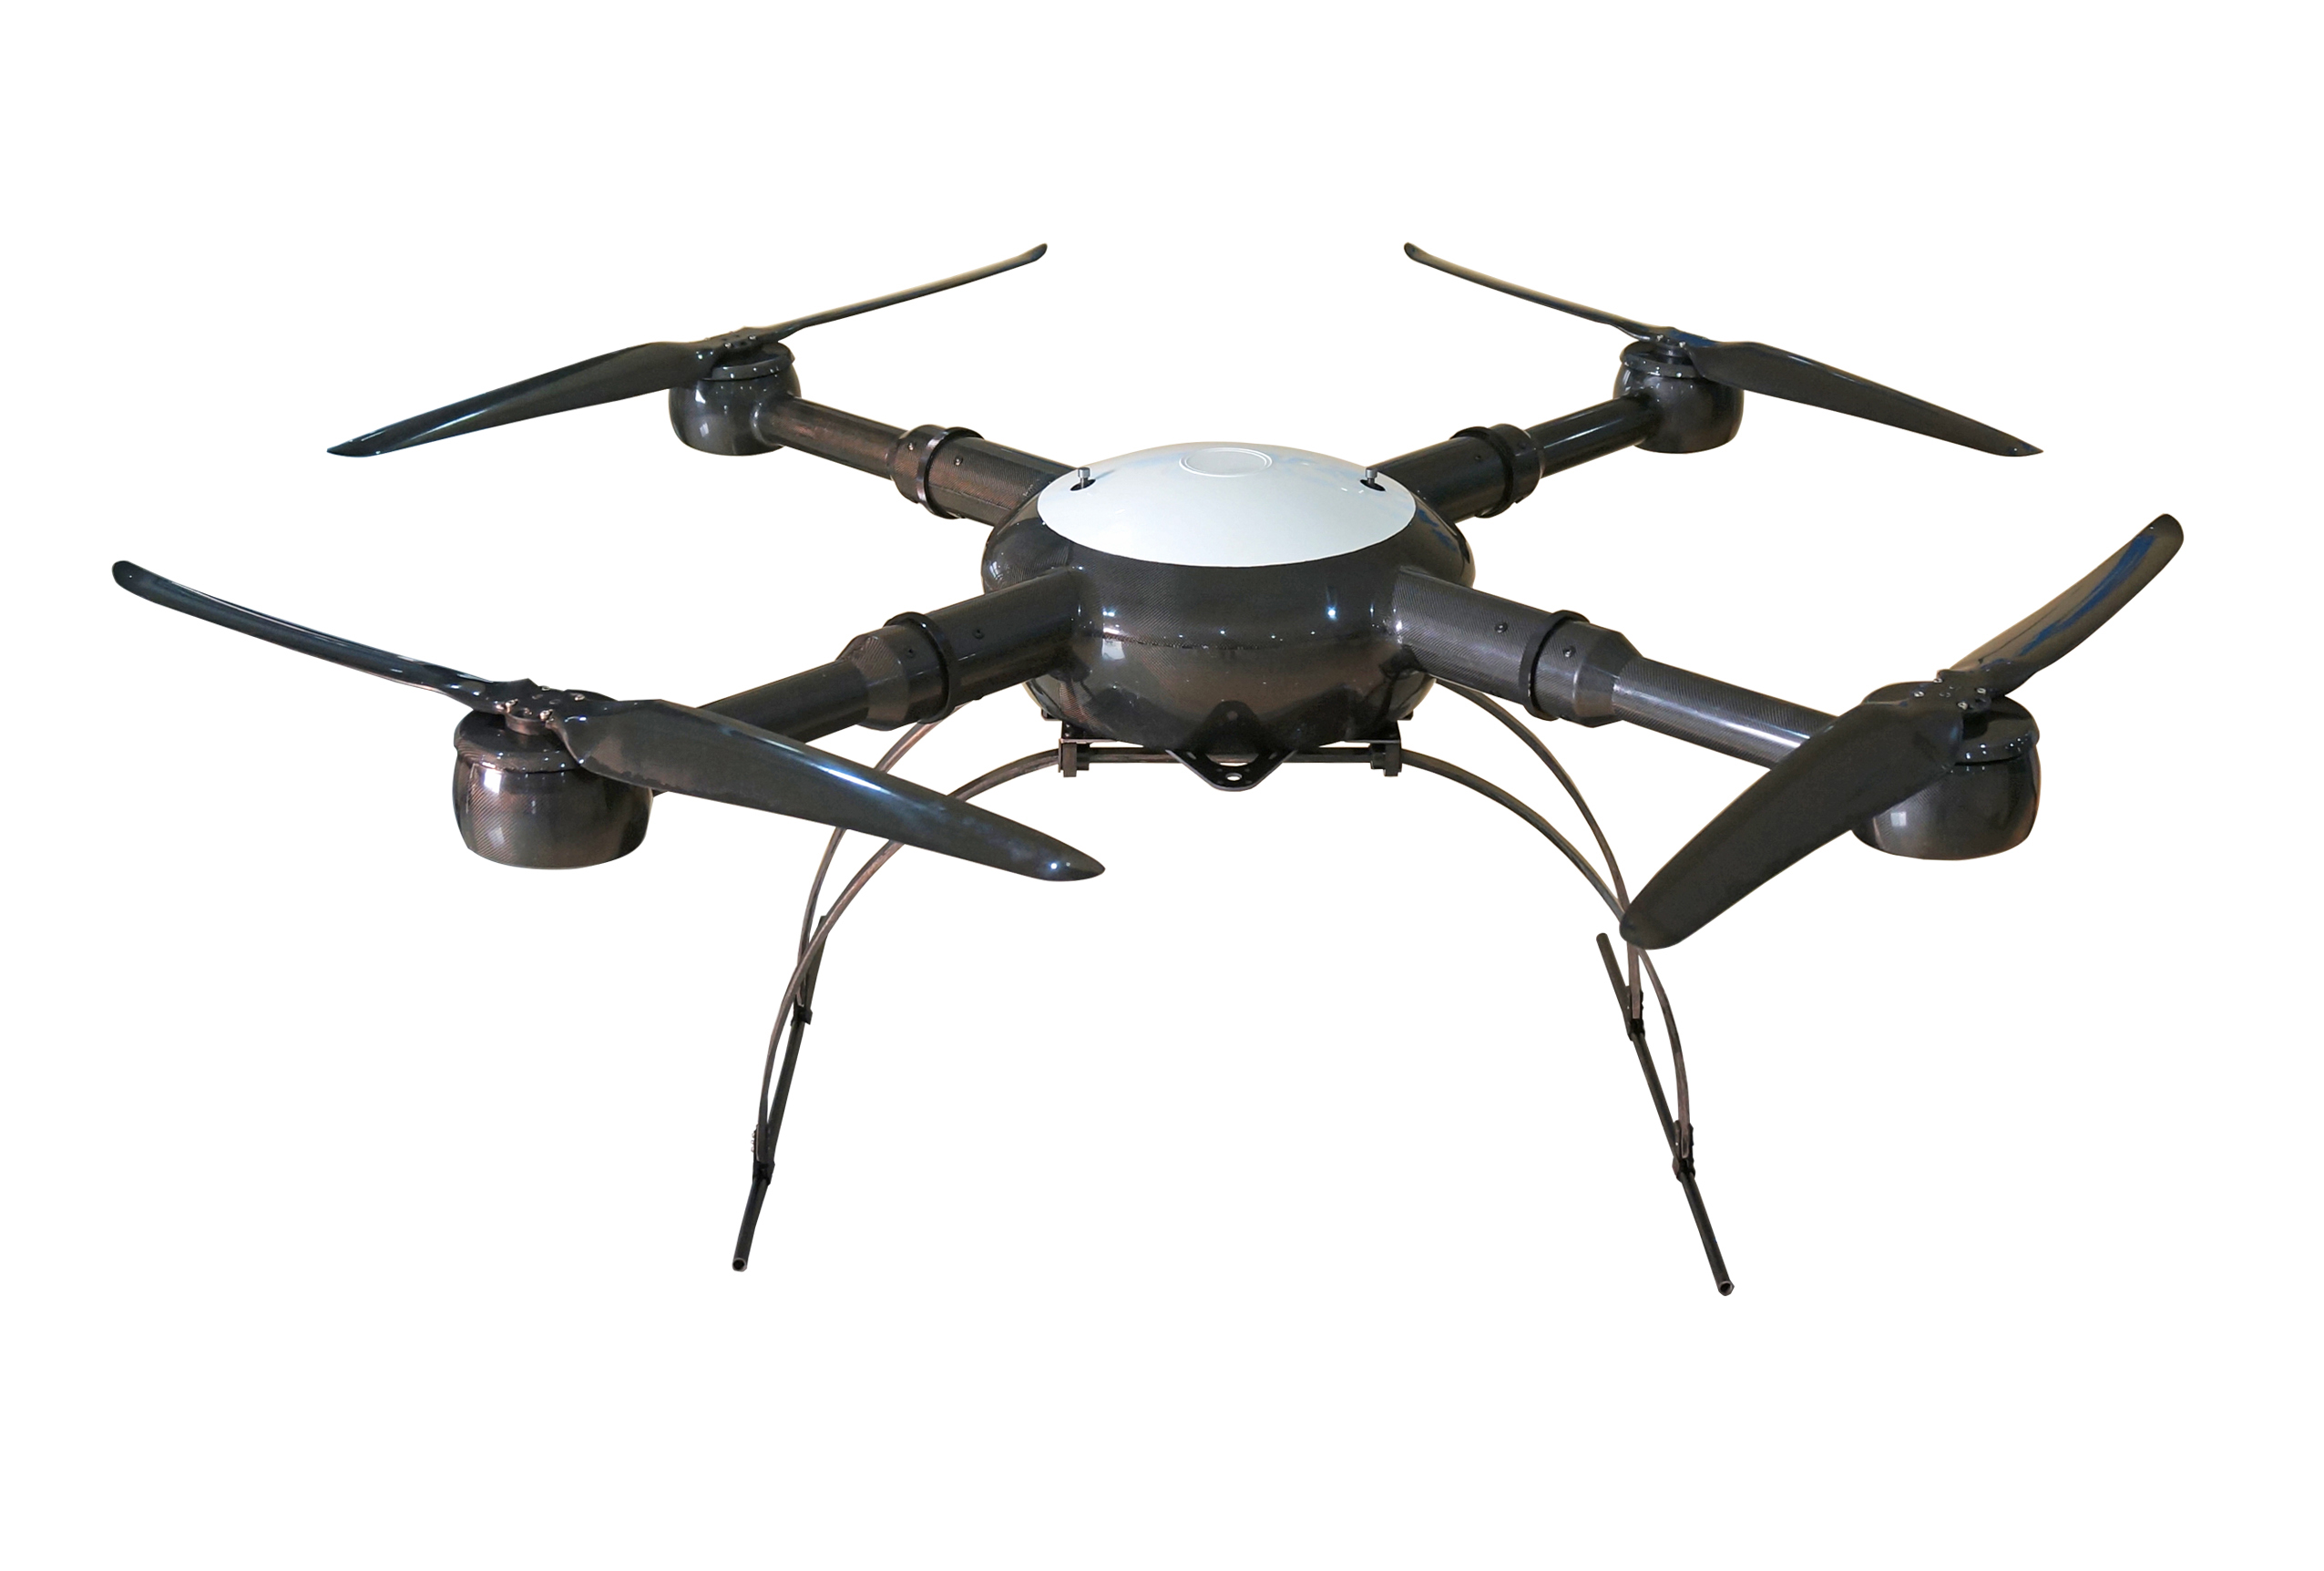 GS-1000   industrial uav drone